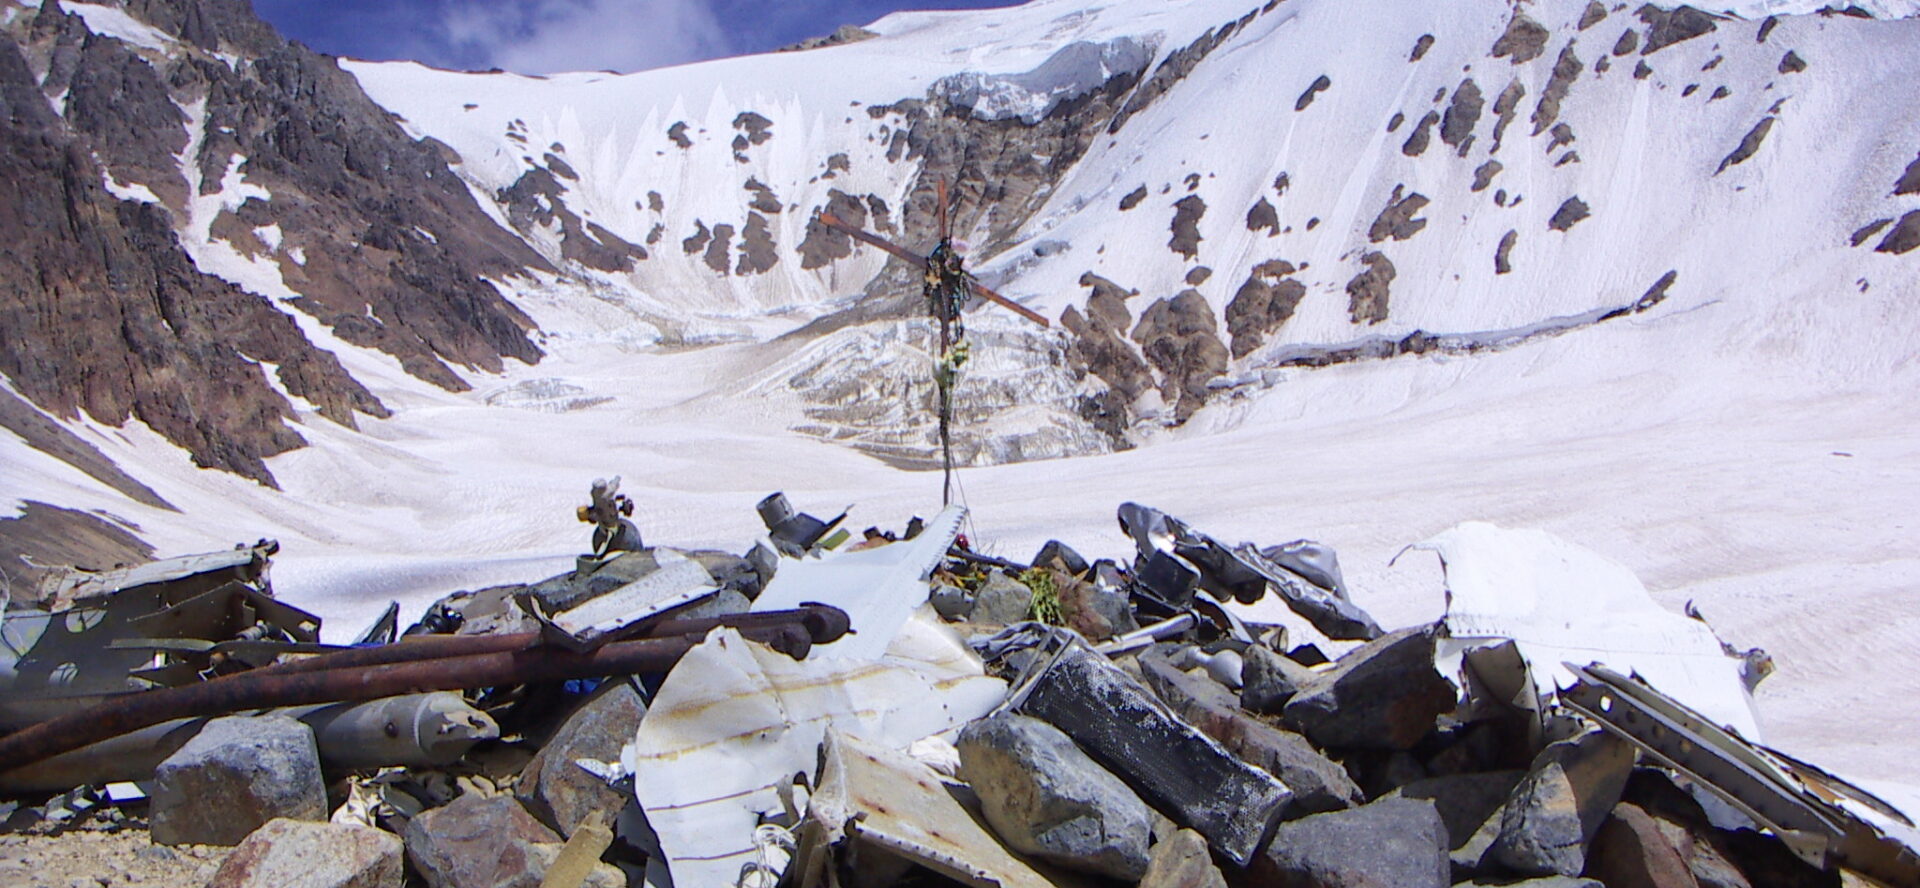 Le mémorial du crash aérien de 1972, dans les Andes argentines | domaine public